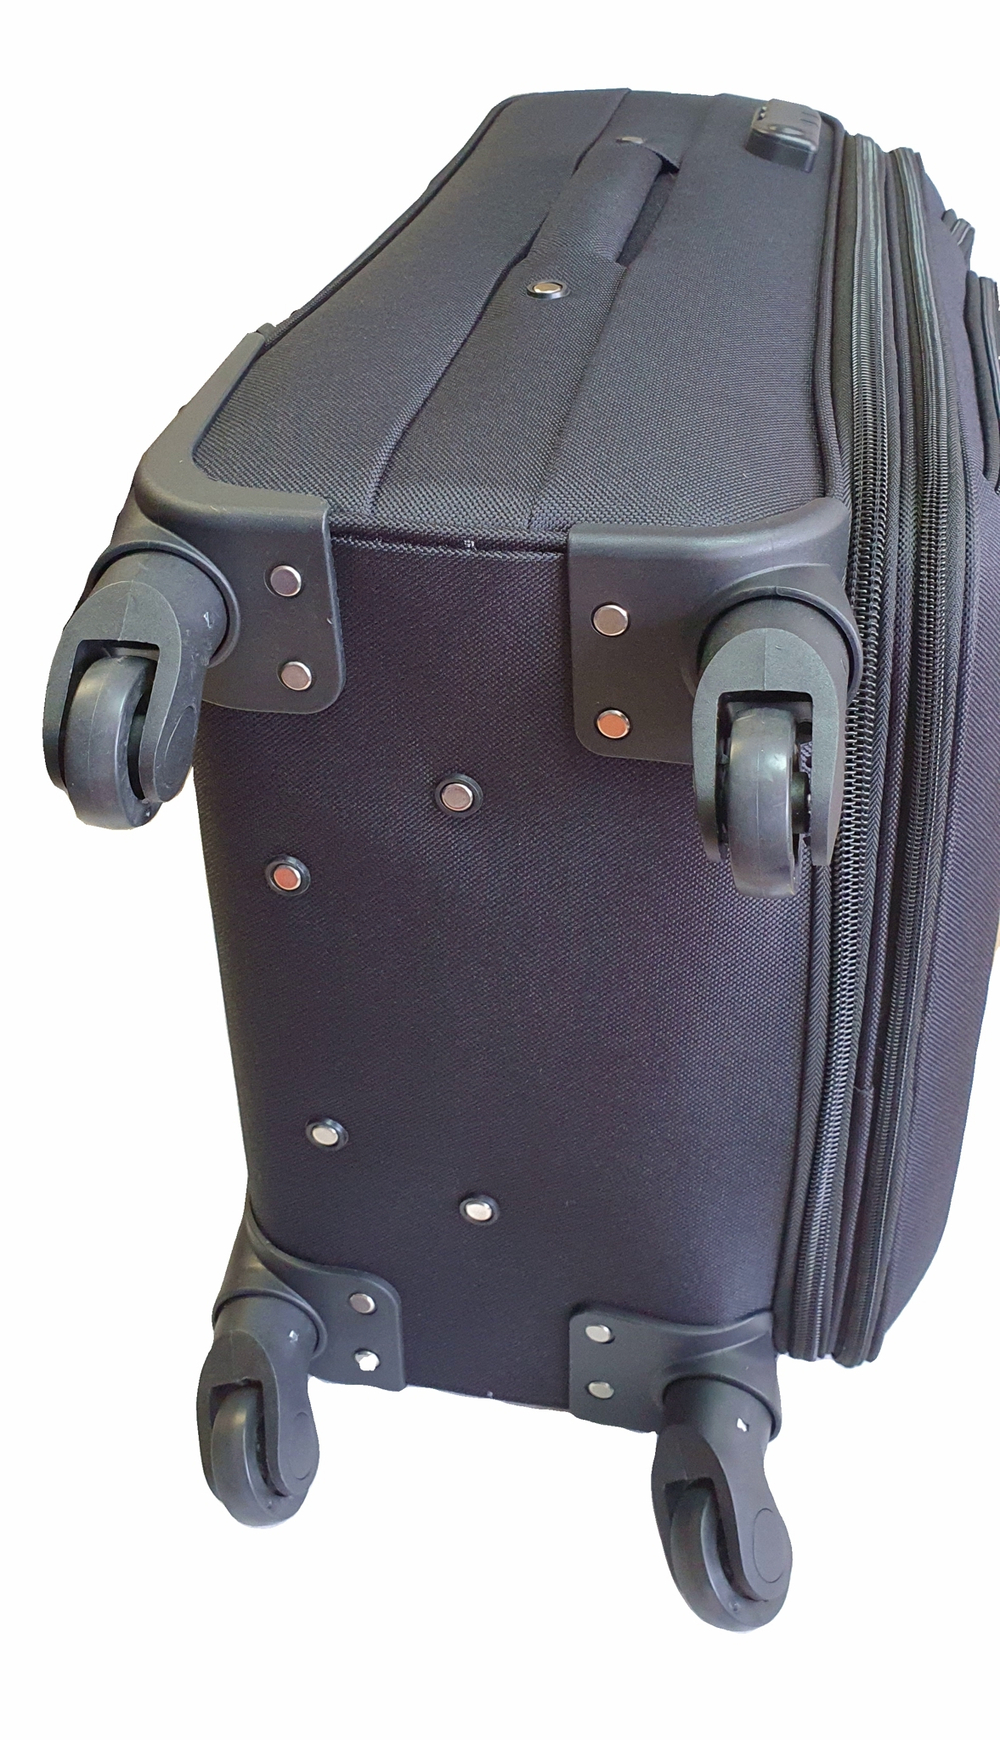 Чемодан тканевый Lcase Amsterdam размера L. Дорожный чемодан с расширением, 75 см, 96 л, Черный